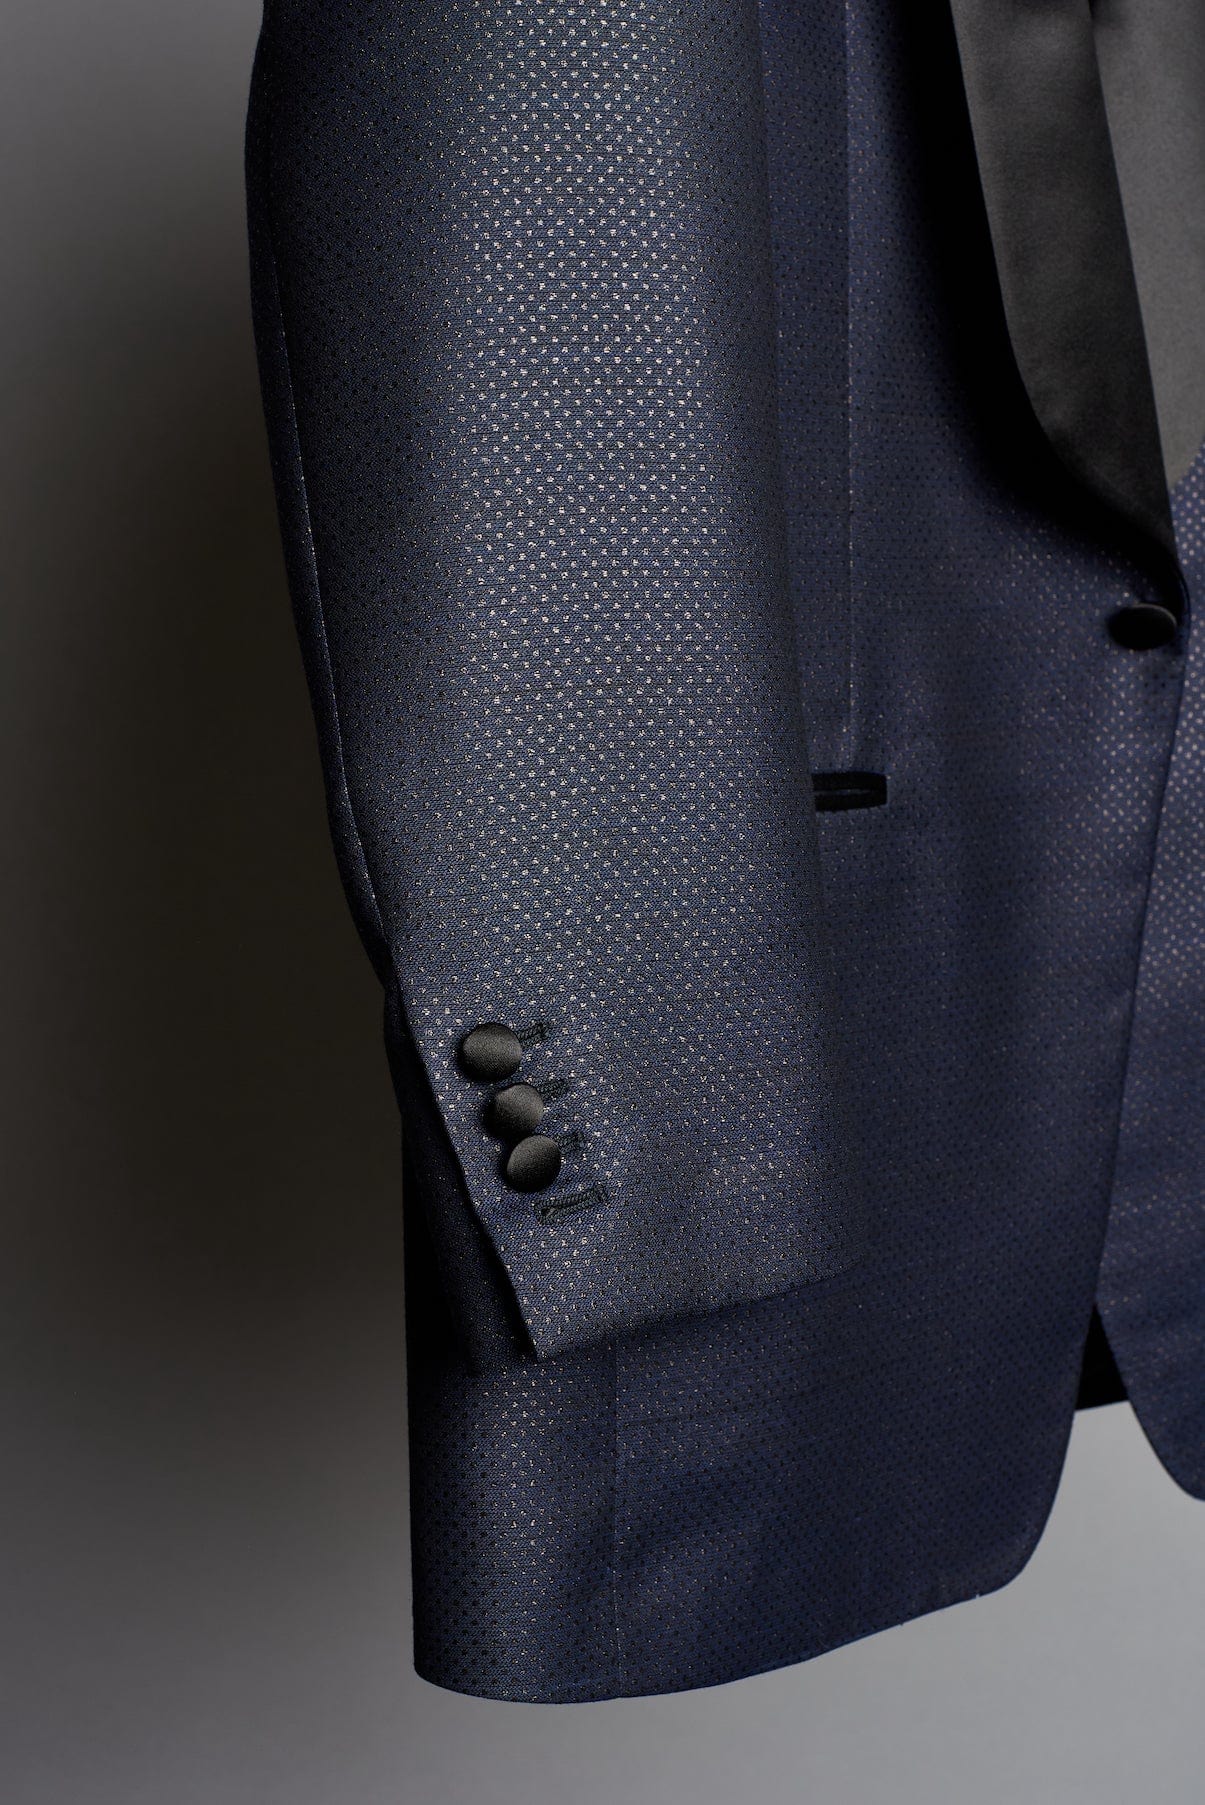 Hugo Boss Boss by Hugo Men's Micro-Patterned Slim-Fit Suit | CoolSprings  Galleria